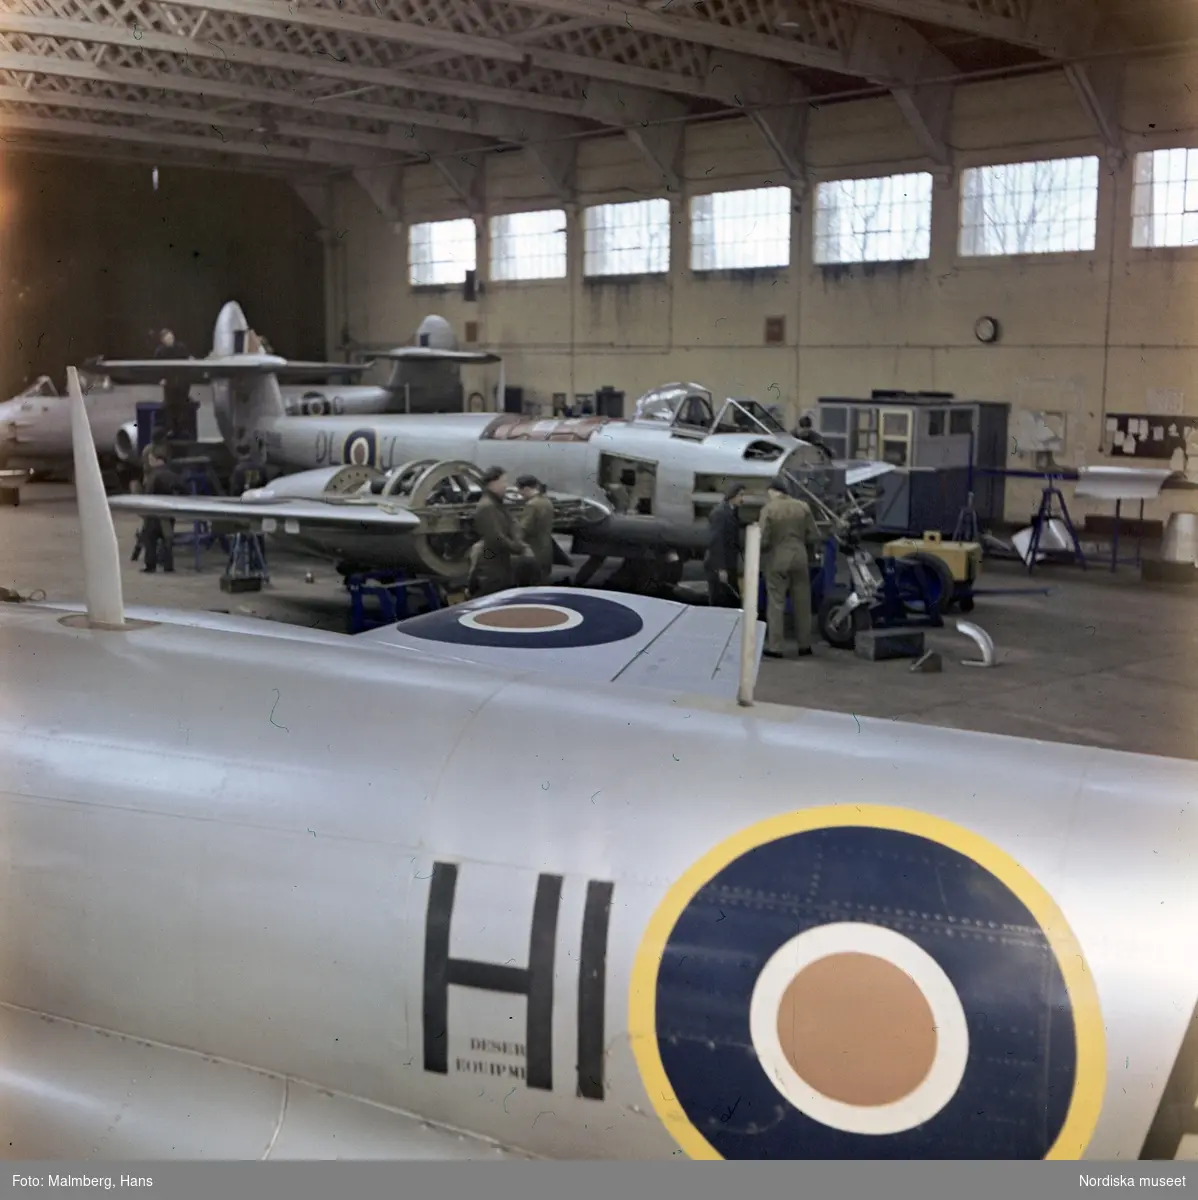 Brittiska flygvapnet, Royal Air Force (RAF). Mekaniker arbetar med jaktplan av typen Gloster Meteor i en hangar. Troligen flygbasen Duxford i Cambridgeshire, England.